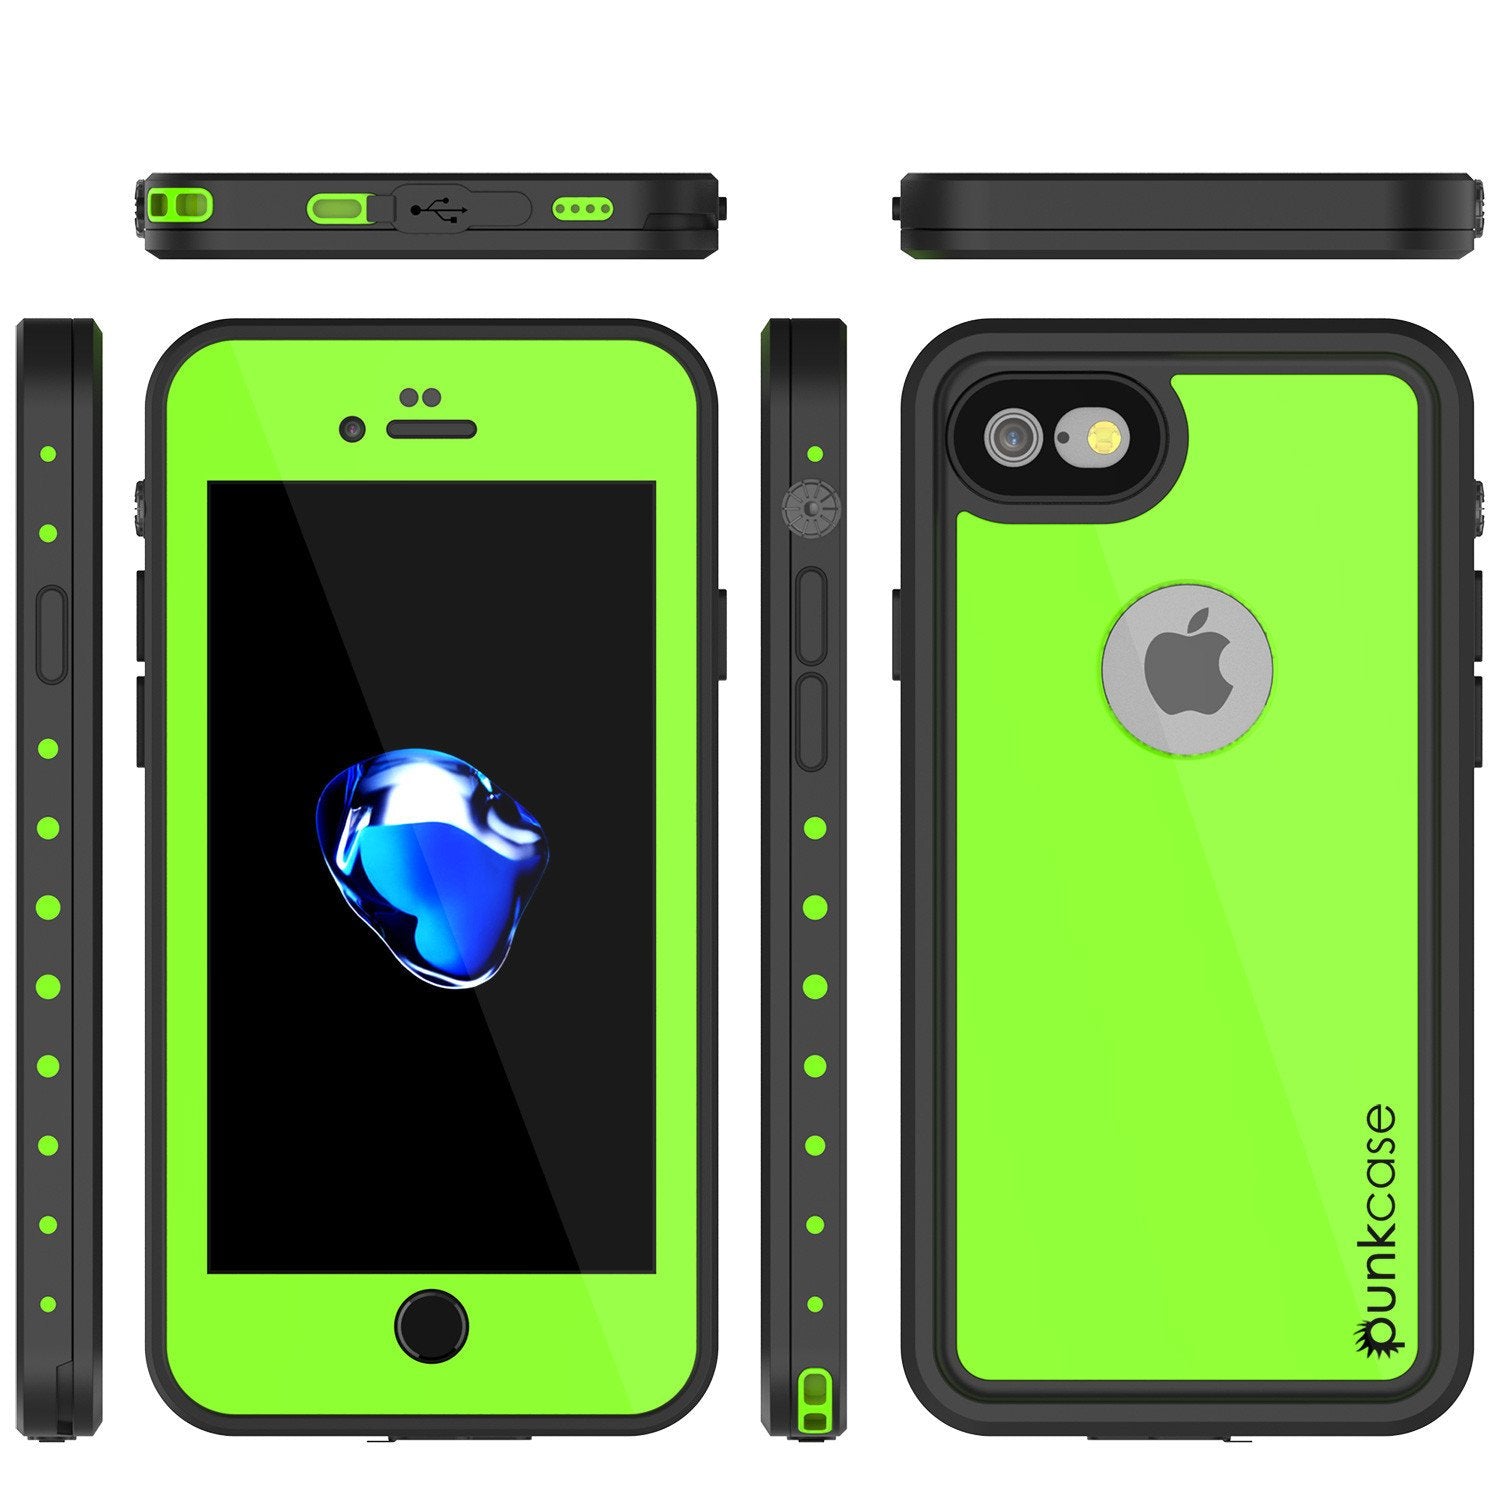 iPhone 7 Waterproof Case, Punkcase [Black] [StudStar Series] [Slim Fit] [IP68 Certified] [Shockproof] [Dirtproof] [Snowproof] Armor Cover for Apple iPhone 7 & 7s